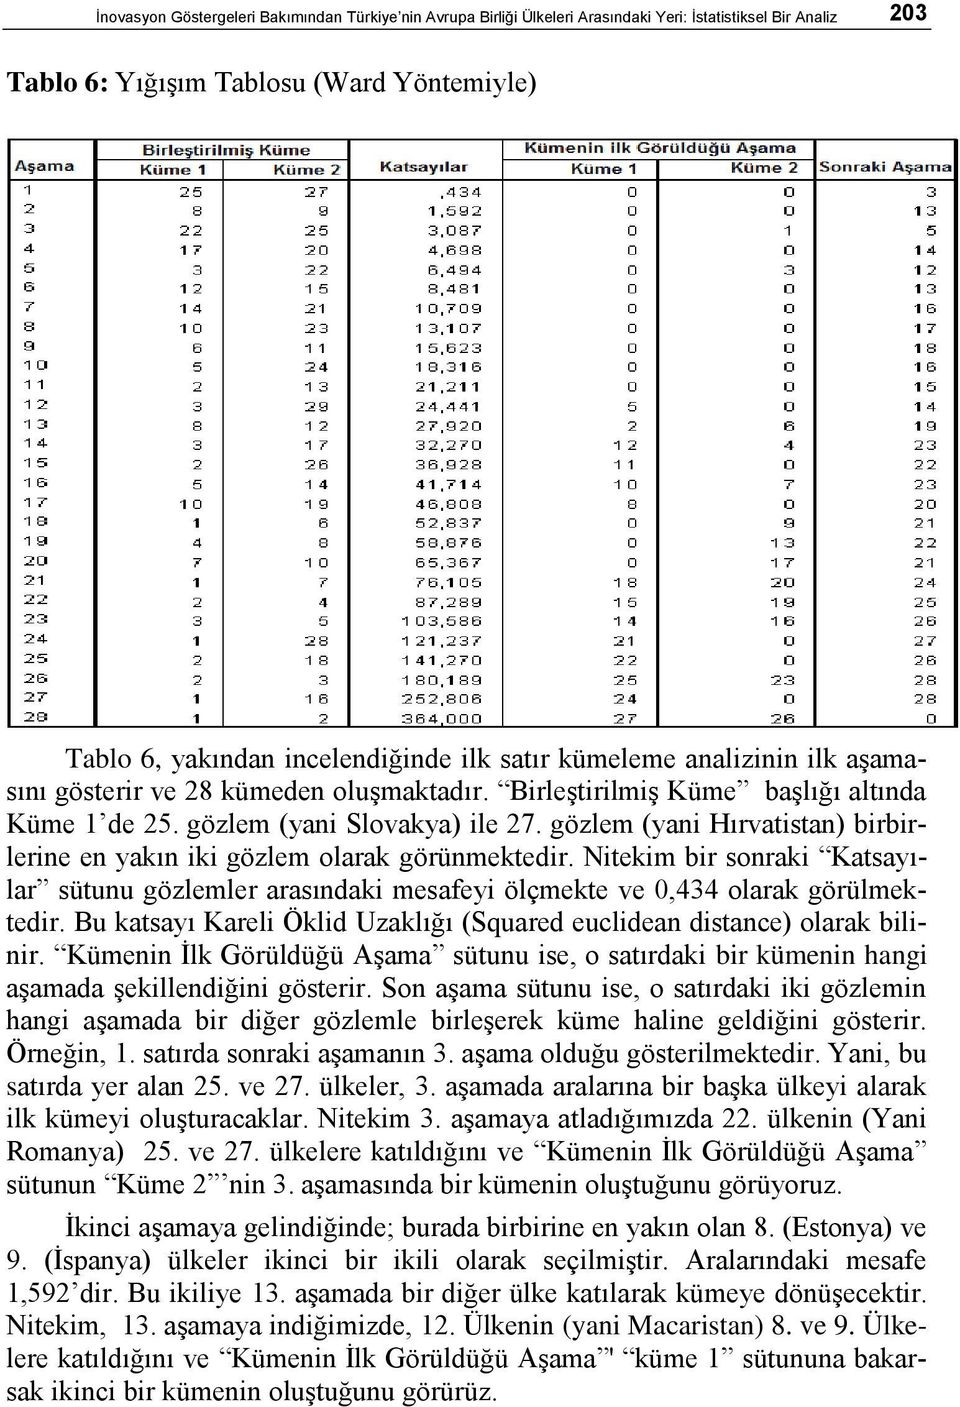 gözlem (yani Hırvatistan) birbirlerine en yakın iki gözlem olarak görünmektedir. Nitekim bir sonraki Katsayılar sütunu gözlemler arasındaki mesafeyi ölçmekte ve 0,434 olarak görülmektedir.